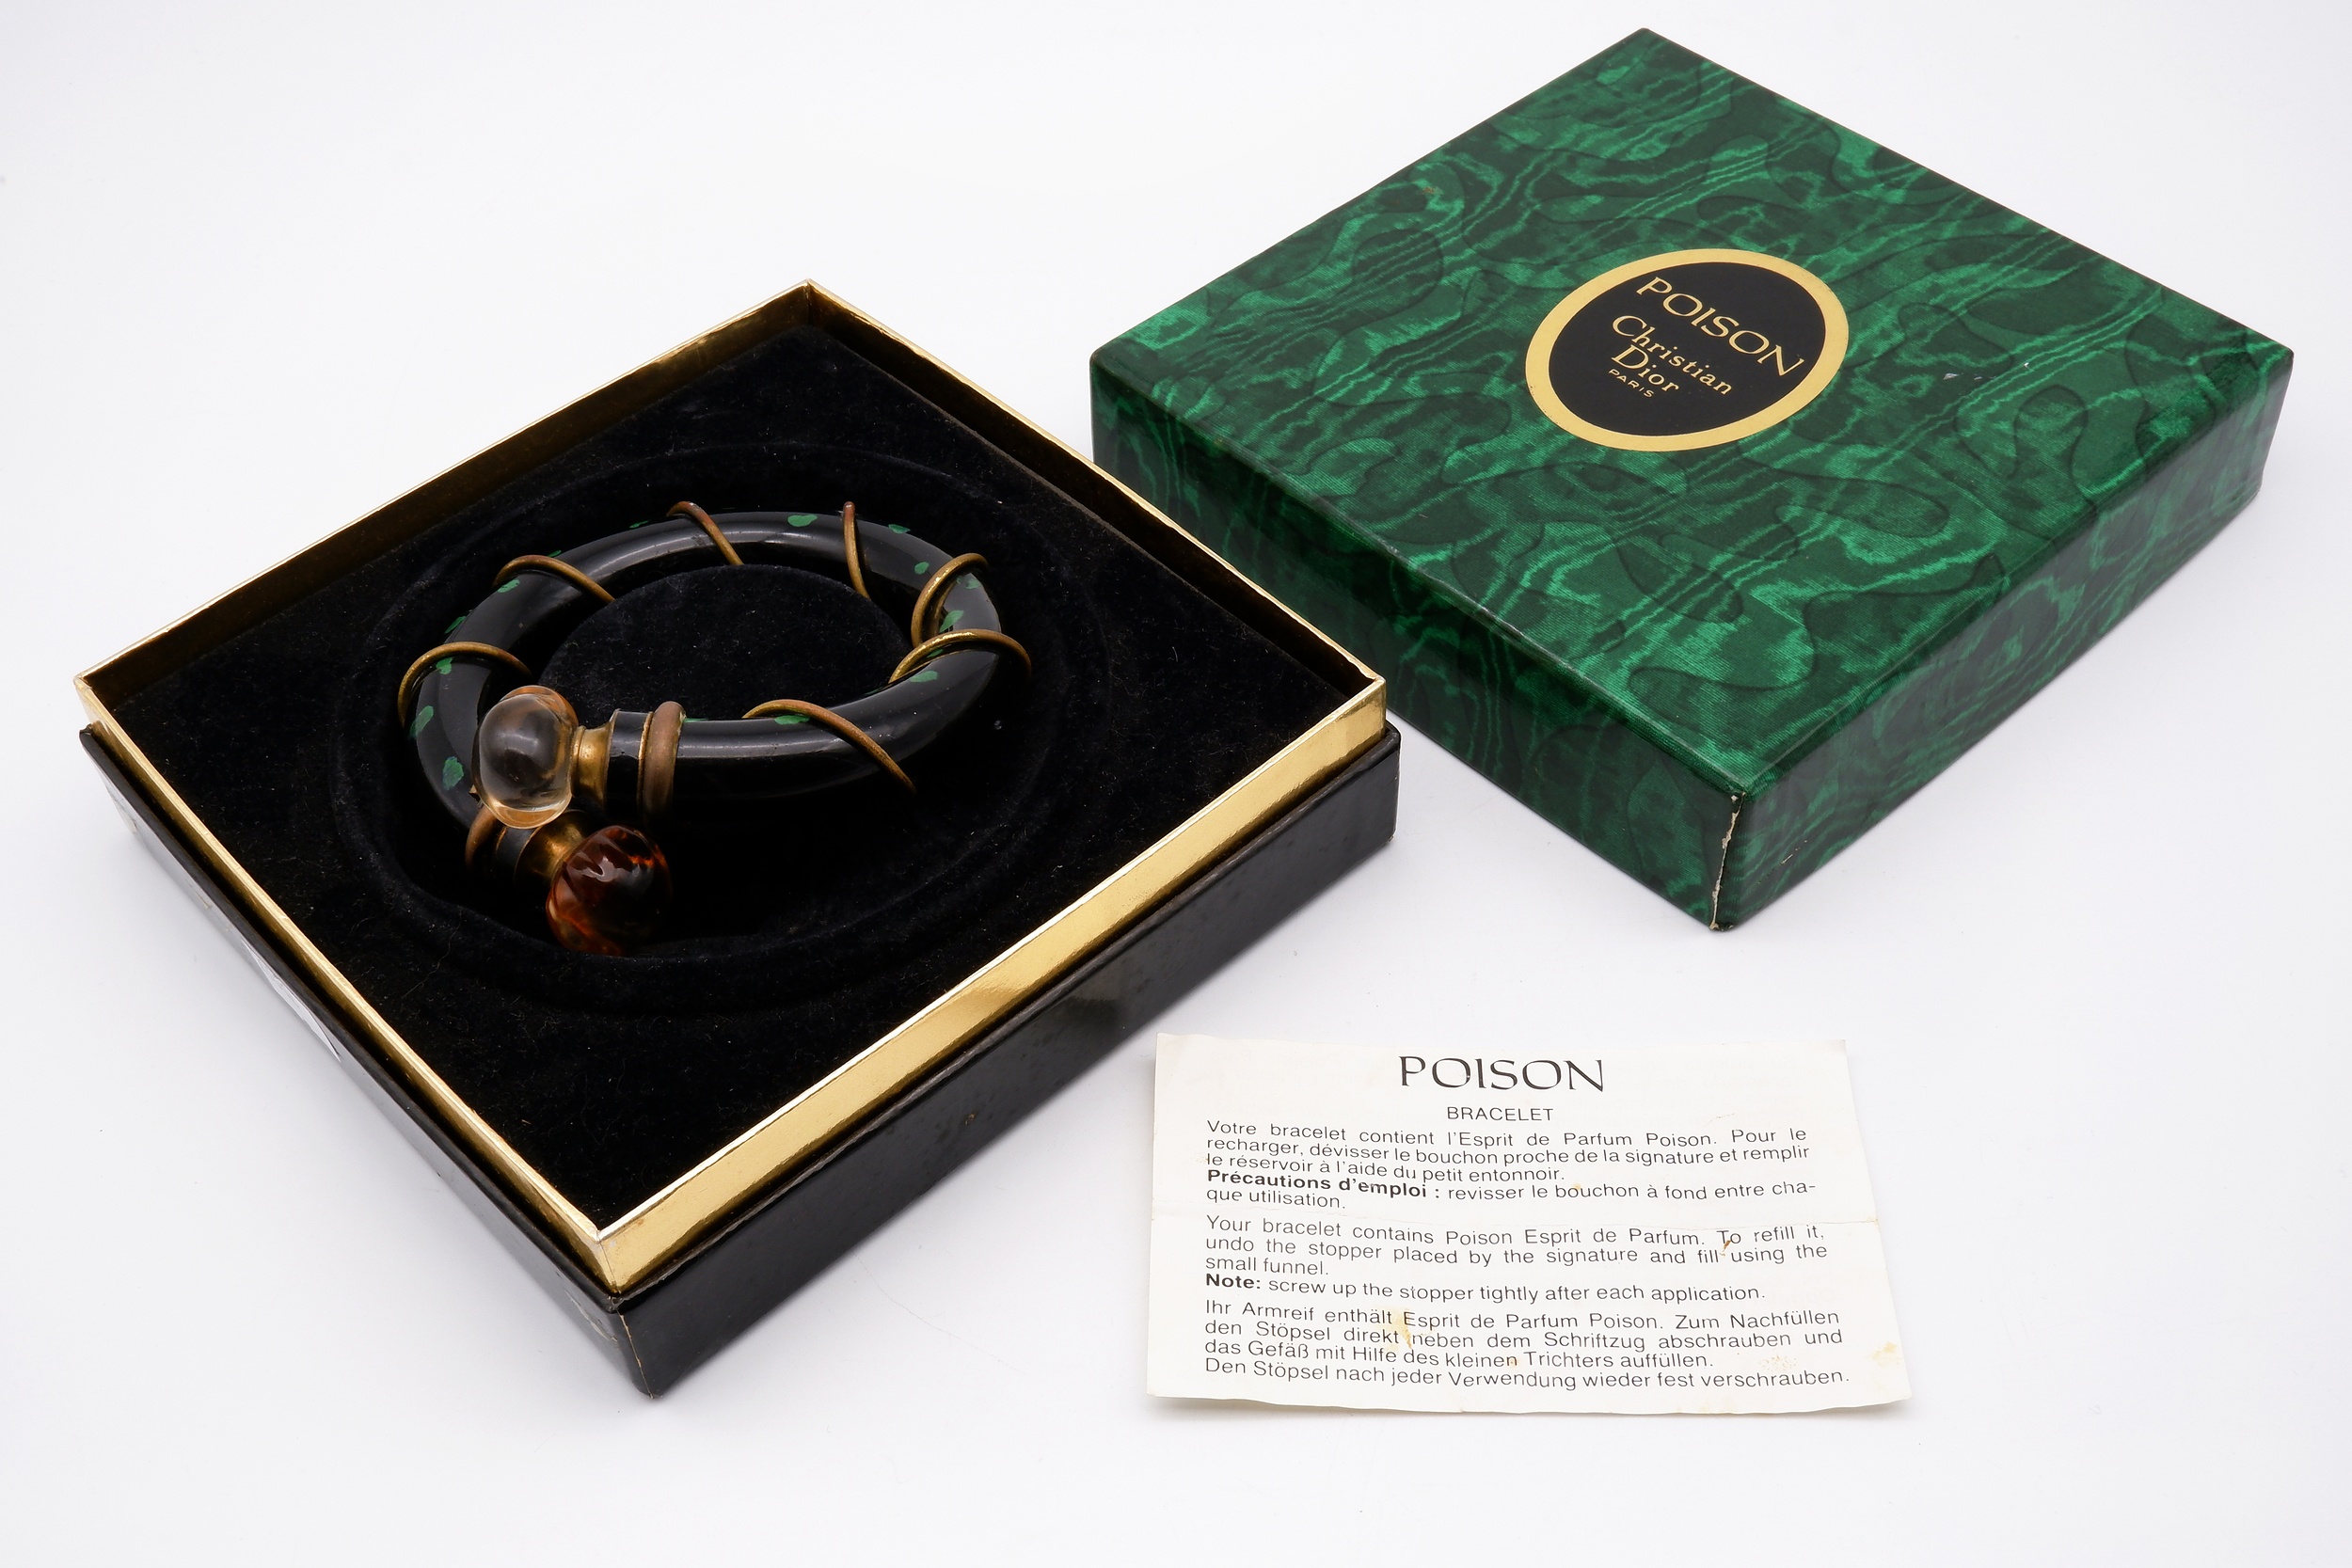 'Christian Dior Paris Poison Braclet Scent Bottle with Original Box'